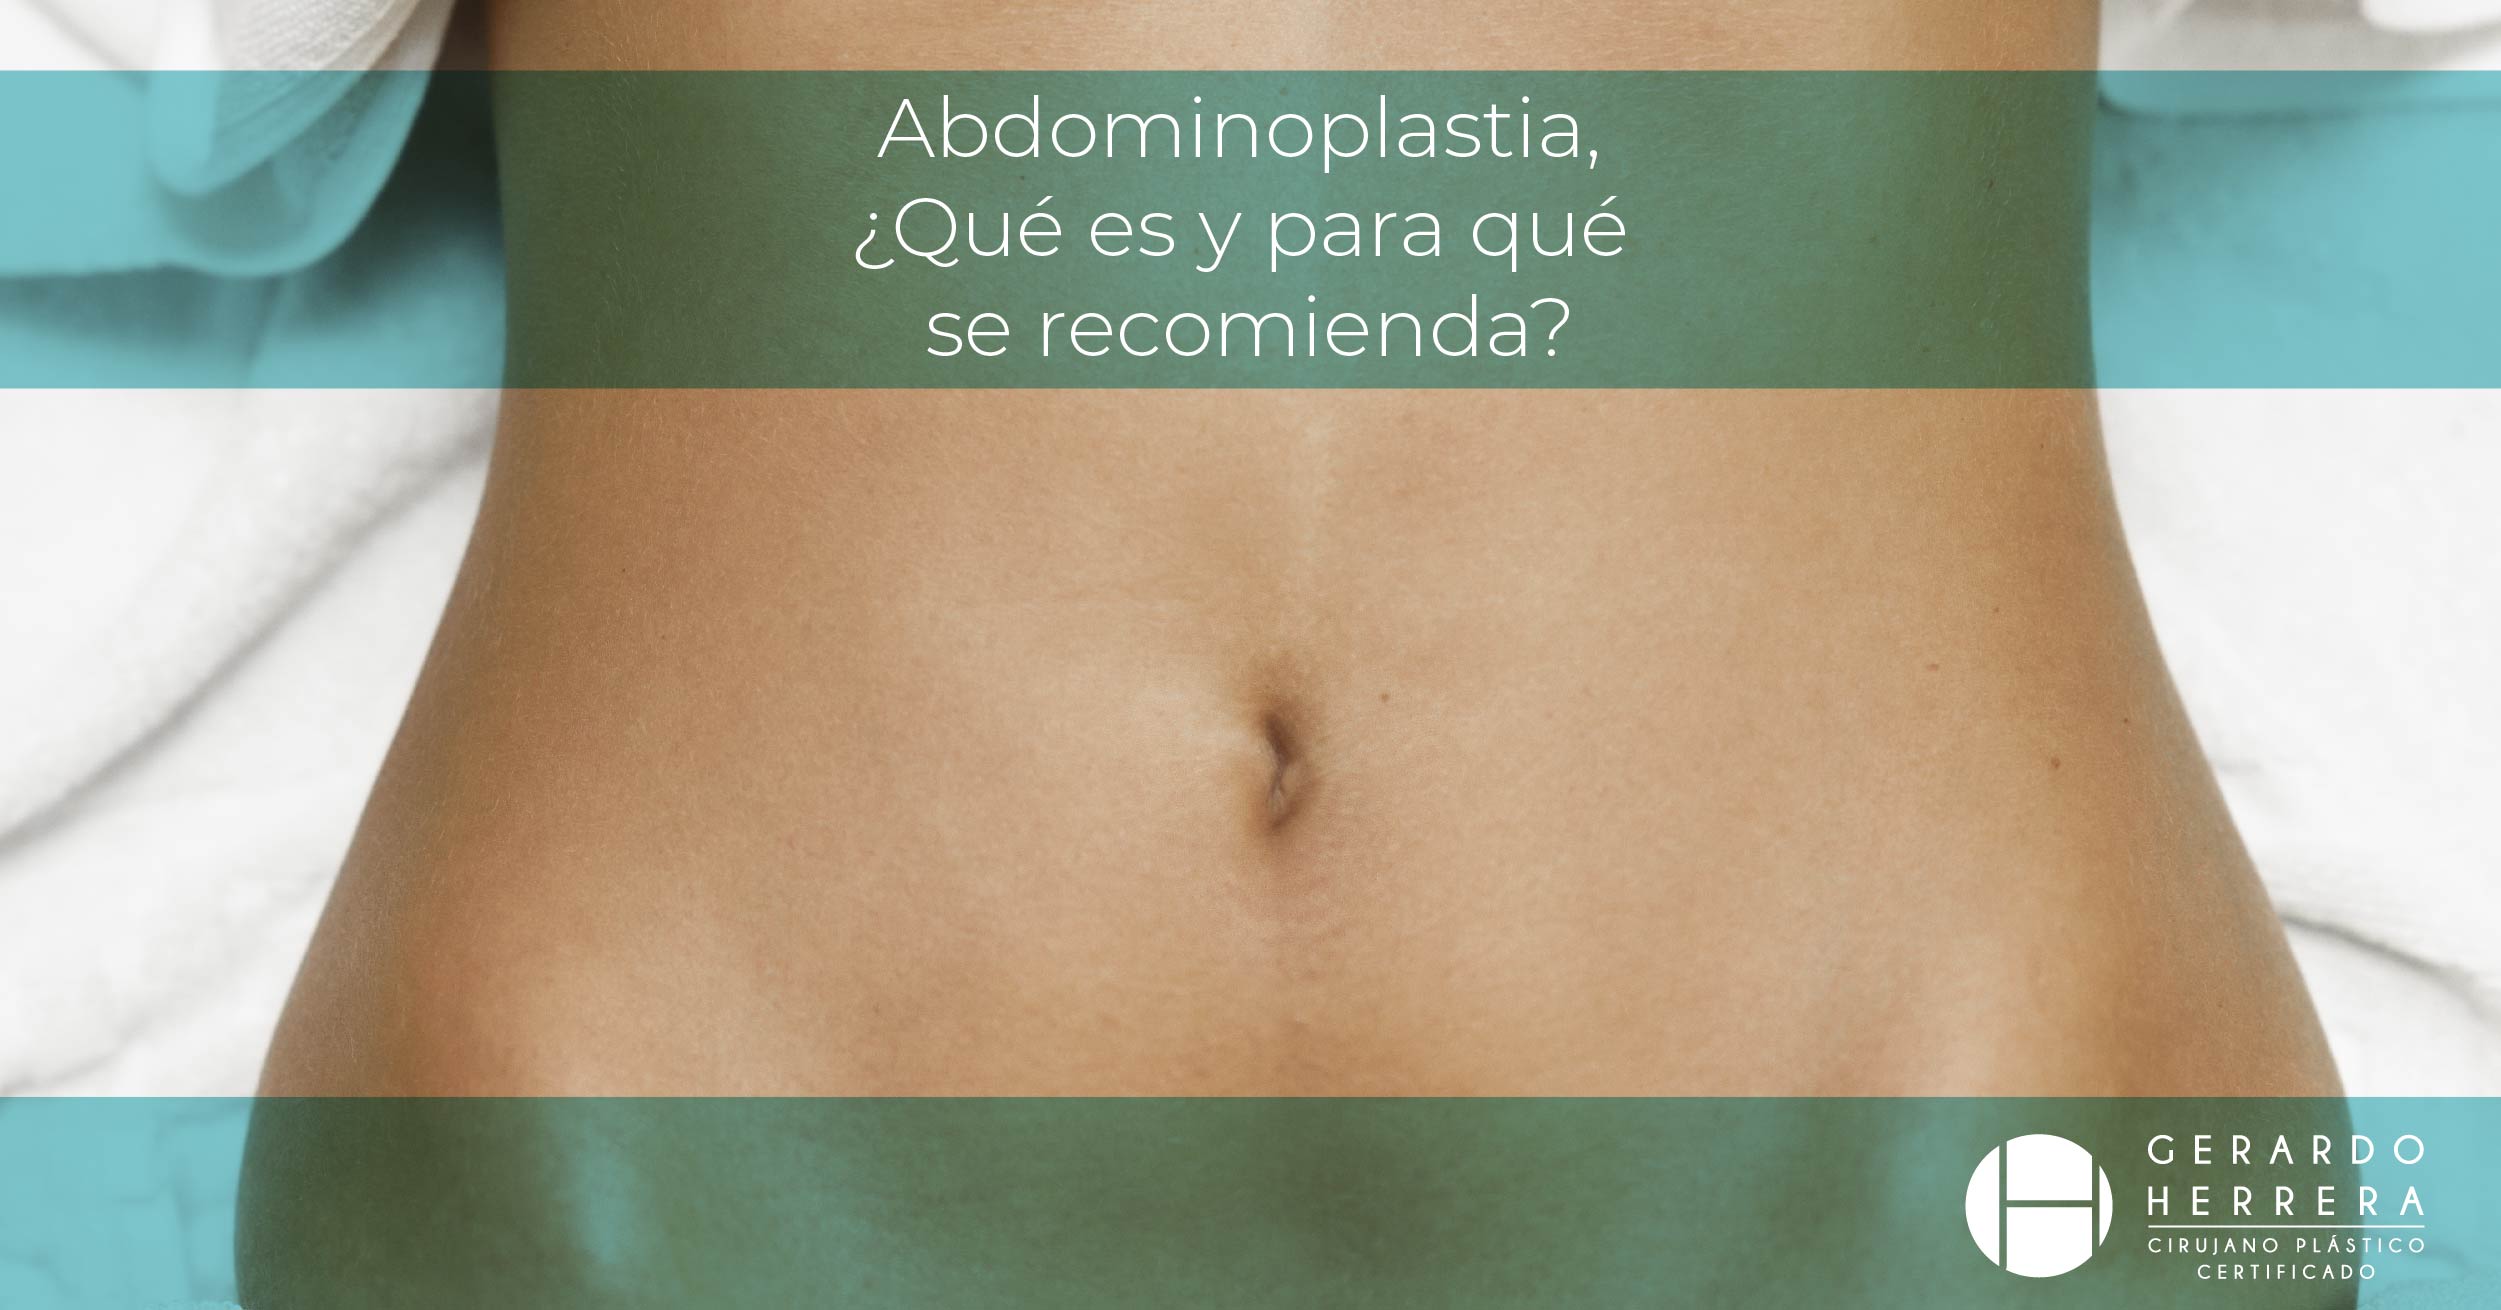 Abdominoplastia en Guadalajara, ¿Qué es y para qué se recomienda?